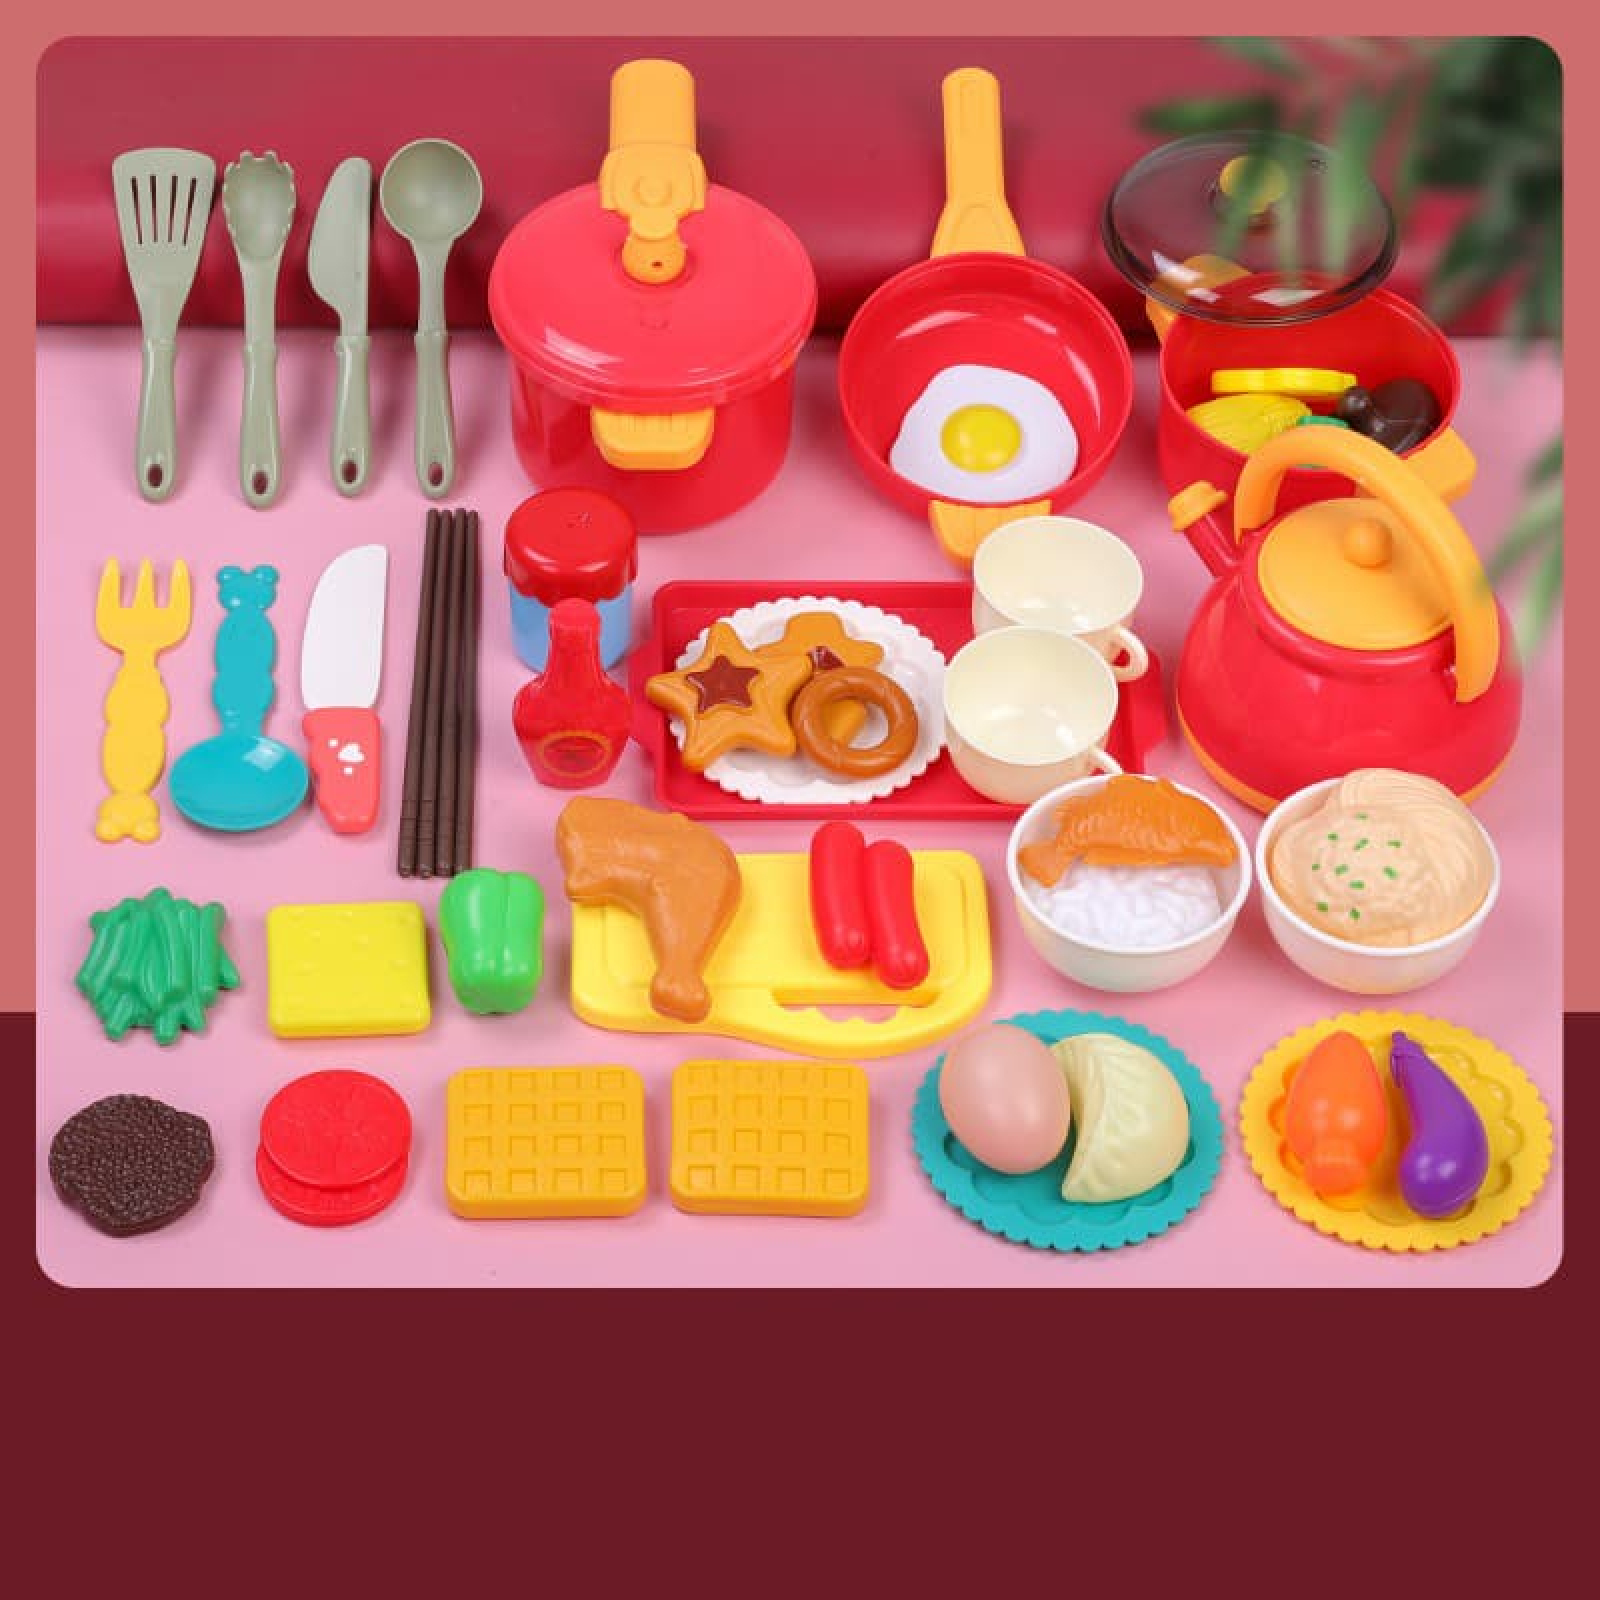 Đồ chơi bếp nấu ăn cho bé gái được thiết kế dành riêng cho các bé gái với nhiều màu sắc tươi sáng và bắt mắt. Họ có thể tưởng tượng và học tập về nghệ thuật nấu ăn sớm, điều này sẽ giúp tăng cường khả năng sáng tạo của các bé. Hãy khám phá các bộ đồ chơi này trong hình ảnh.